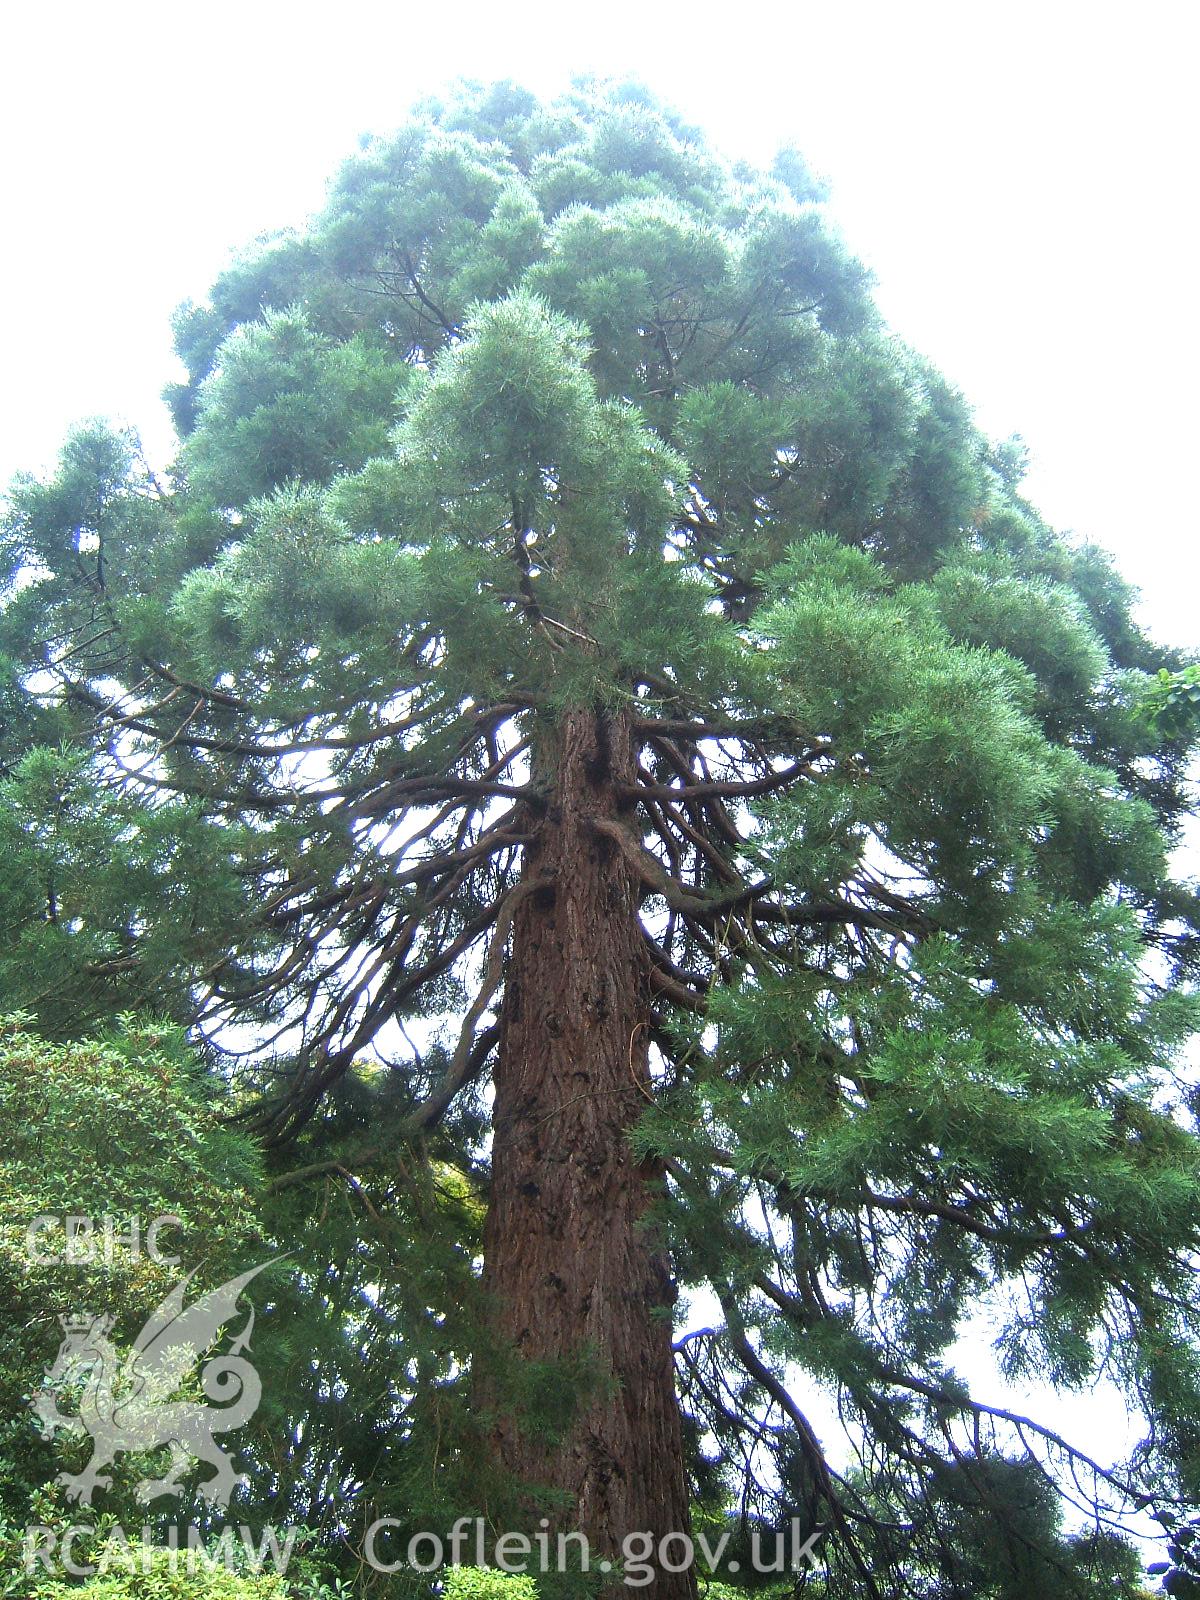 Upper part of Sequoia.